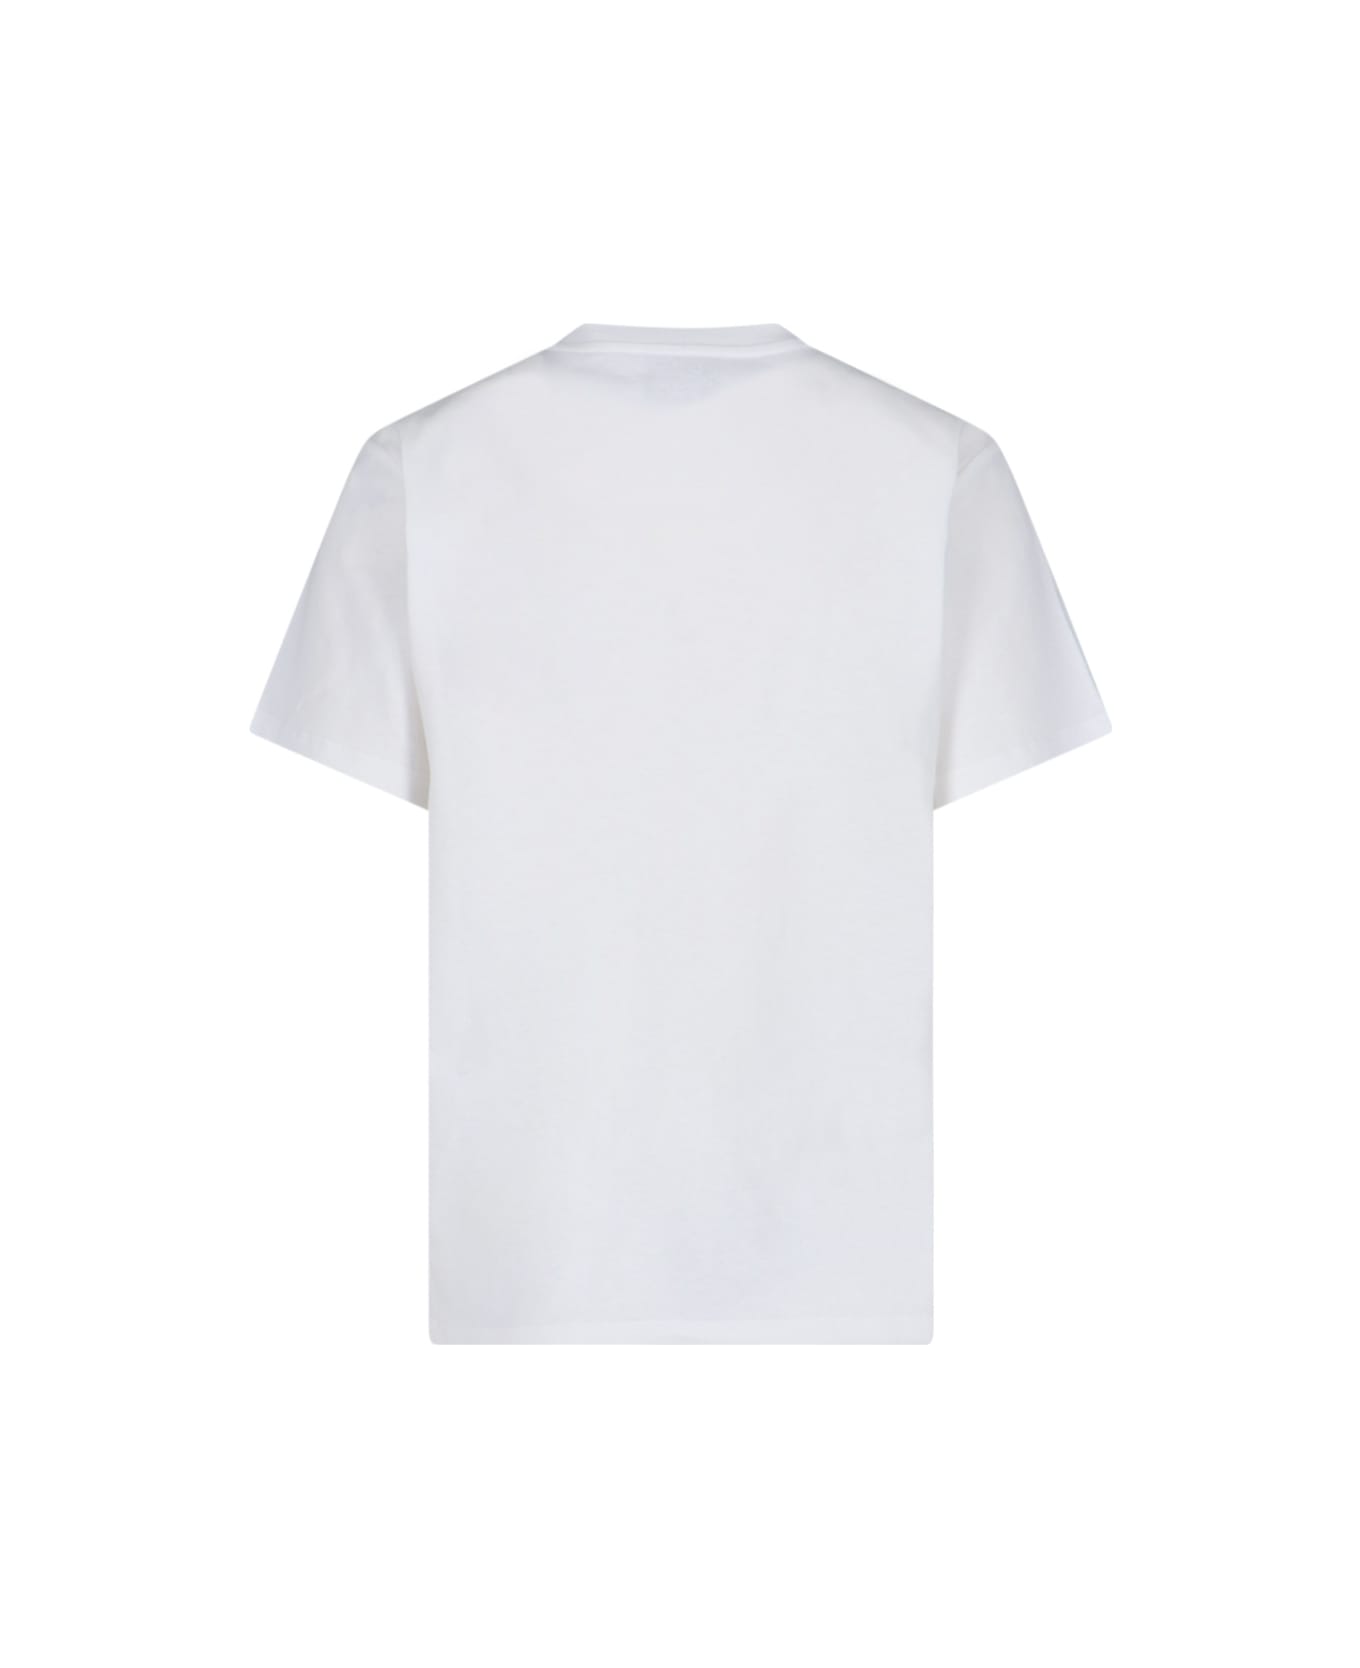 Coperni Logo T-shirt - White Tシャツ